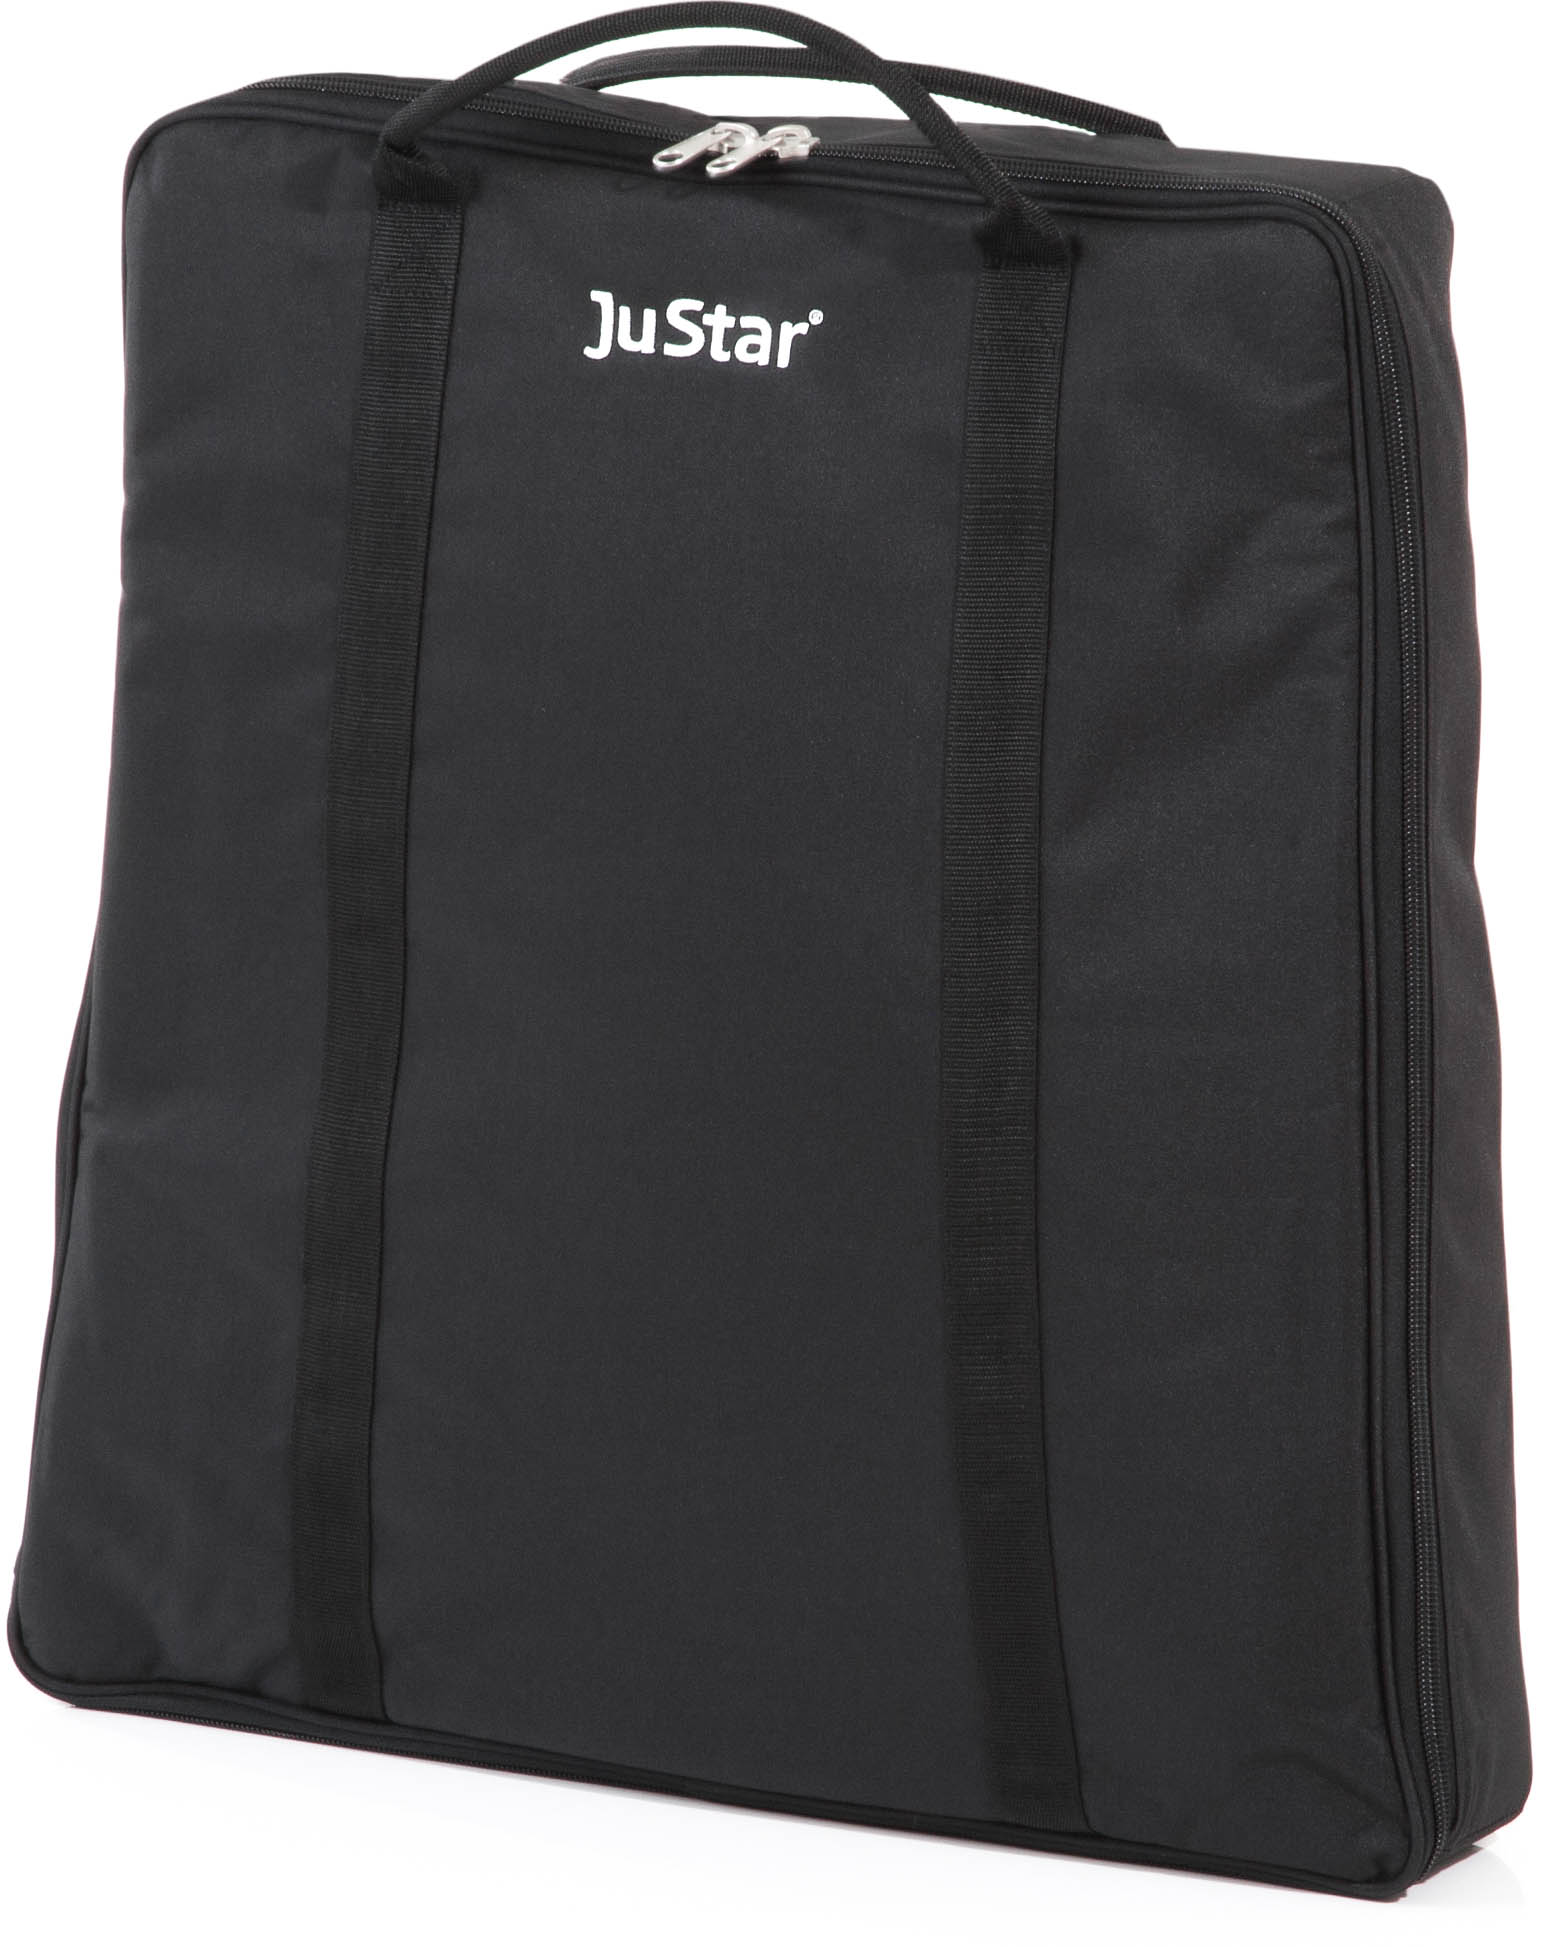 JuStar Tragetasche für JuStar Carbon/Titan/Silver/Silver manuell